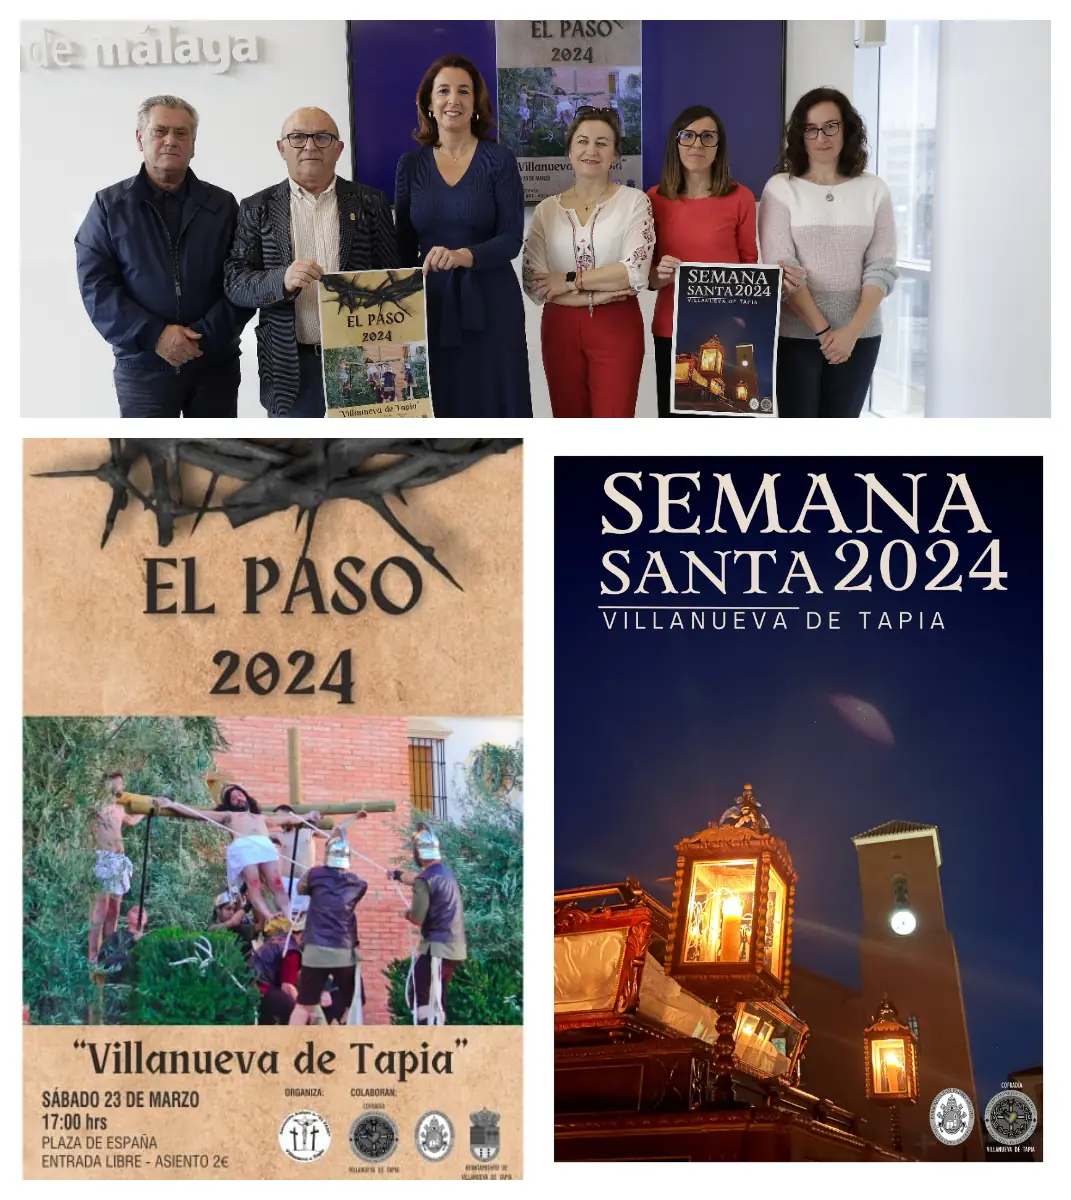 Vecinos de Villanueva de Tapia representan El Paso el sábado 23 de marzo con diálogos en verso